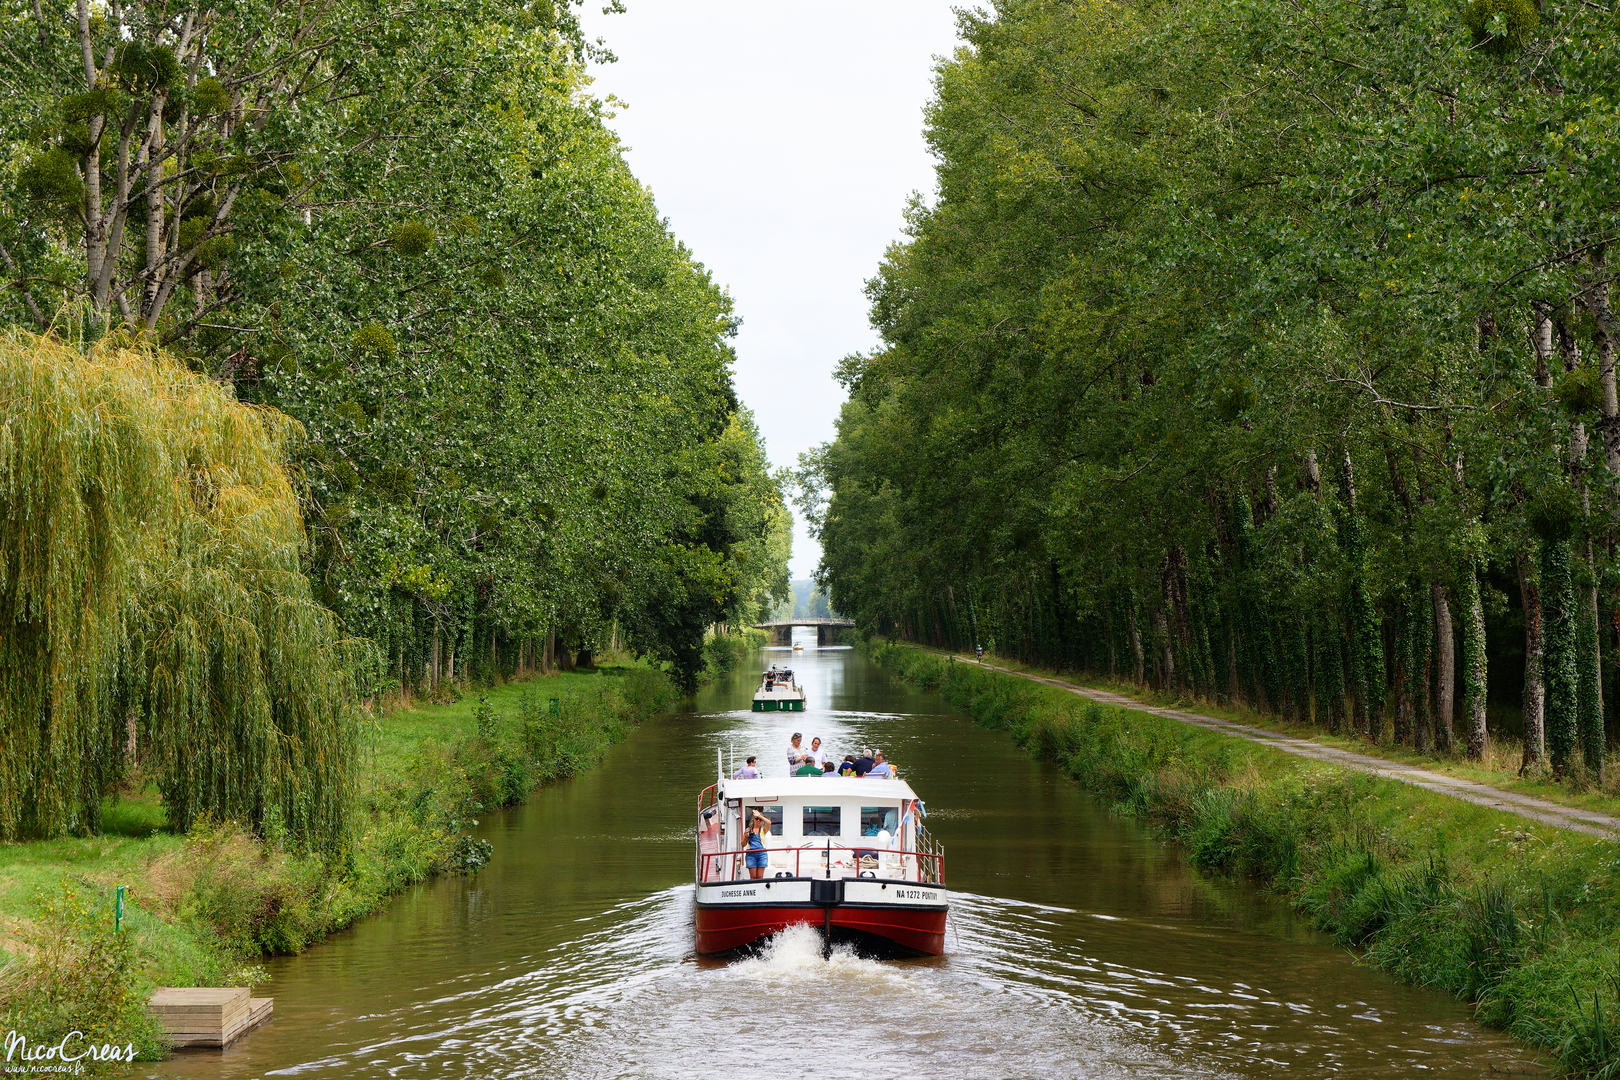 Écluse de Limur - Canal de Nantes à Brest - _DSC1802_DxO copie.jpg